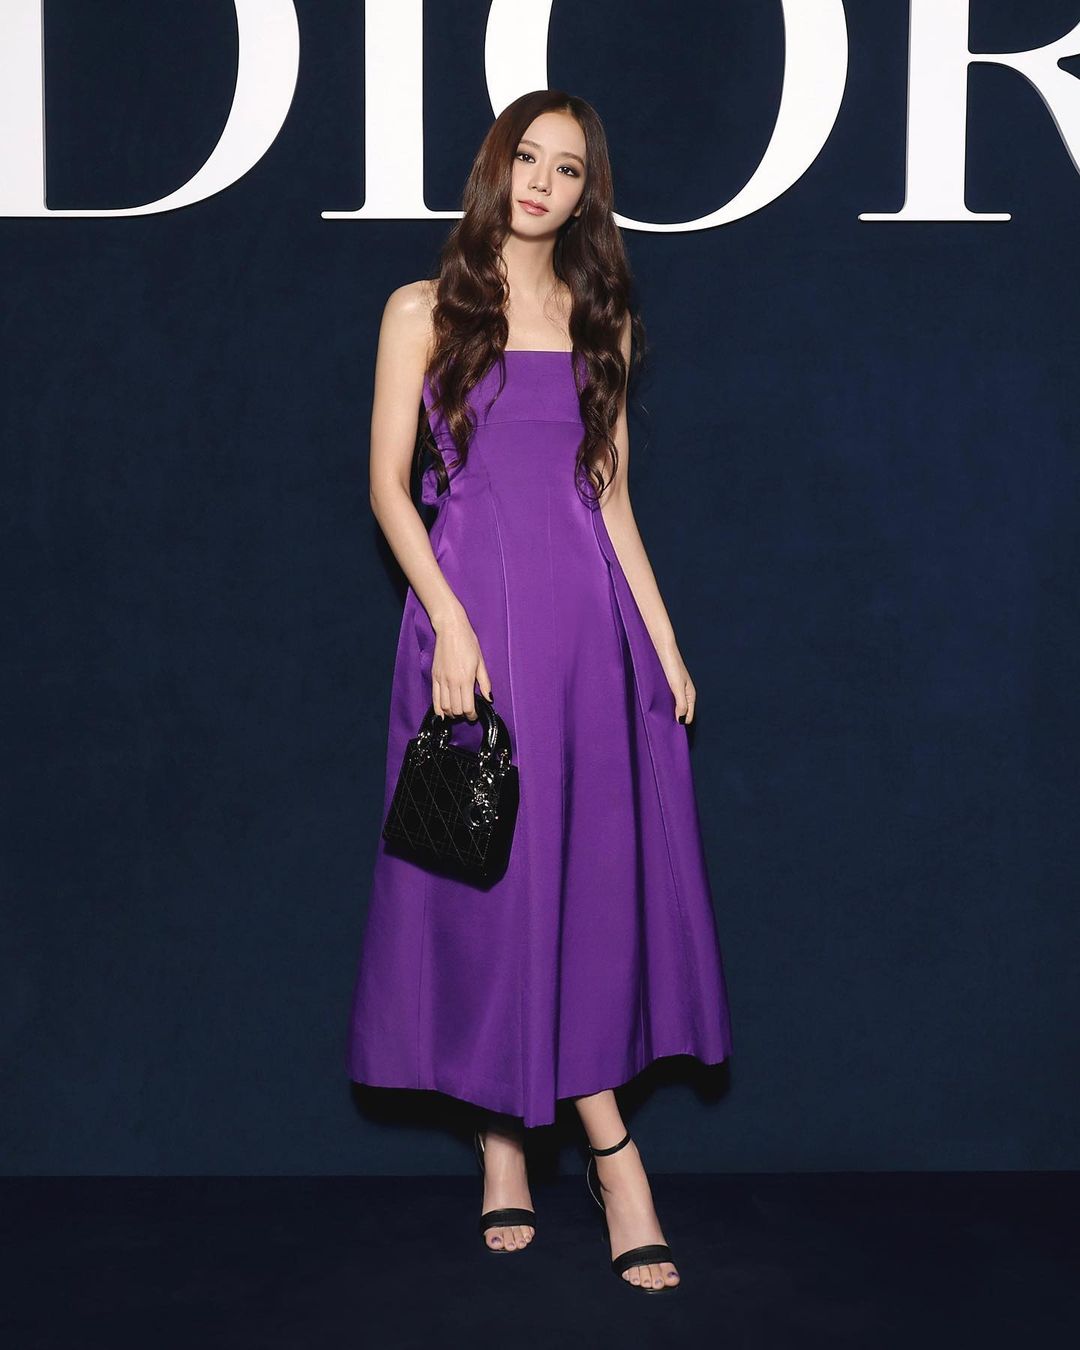 Châu Bùi dự show diễn Dior Thu Đông 2023 cùng Jisoo BLACKPINK